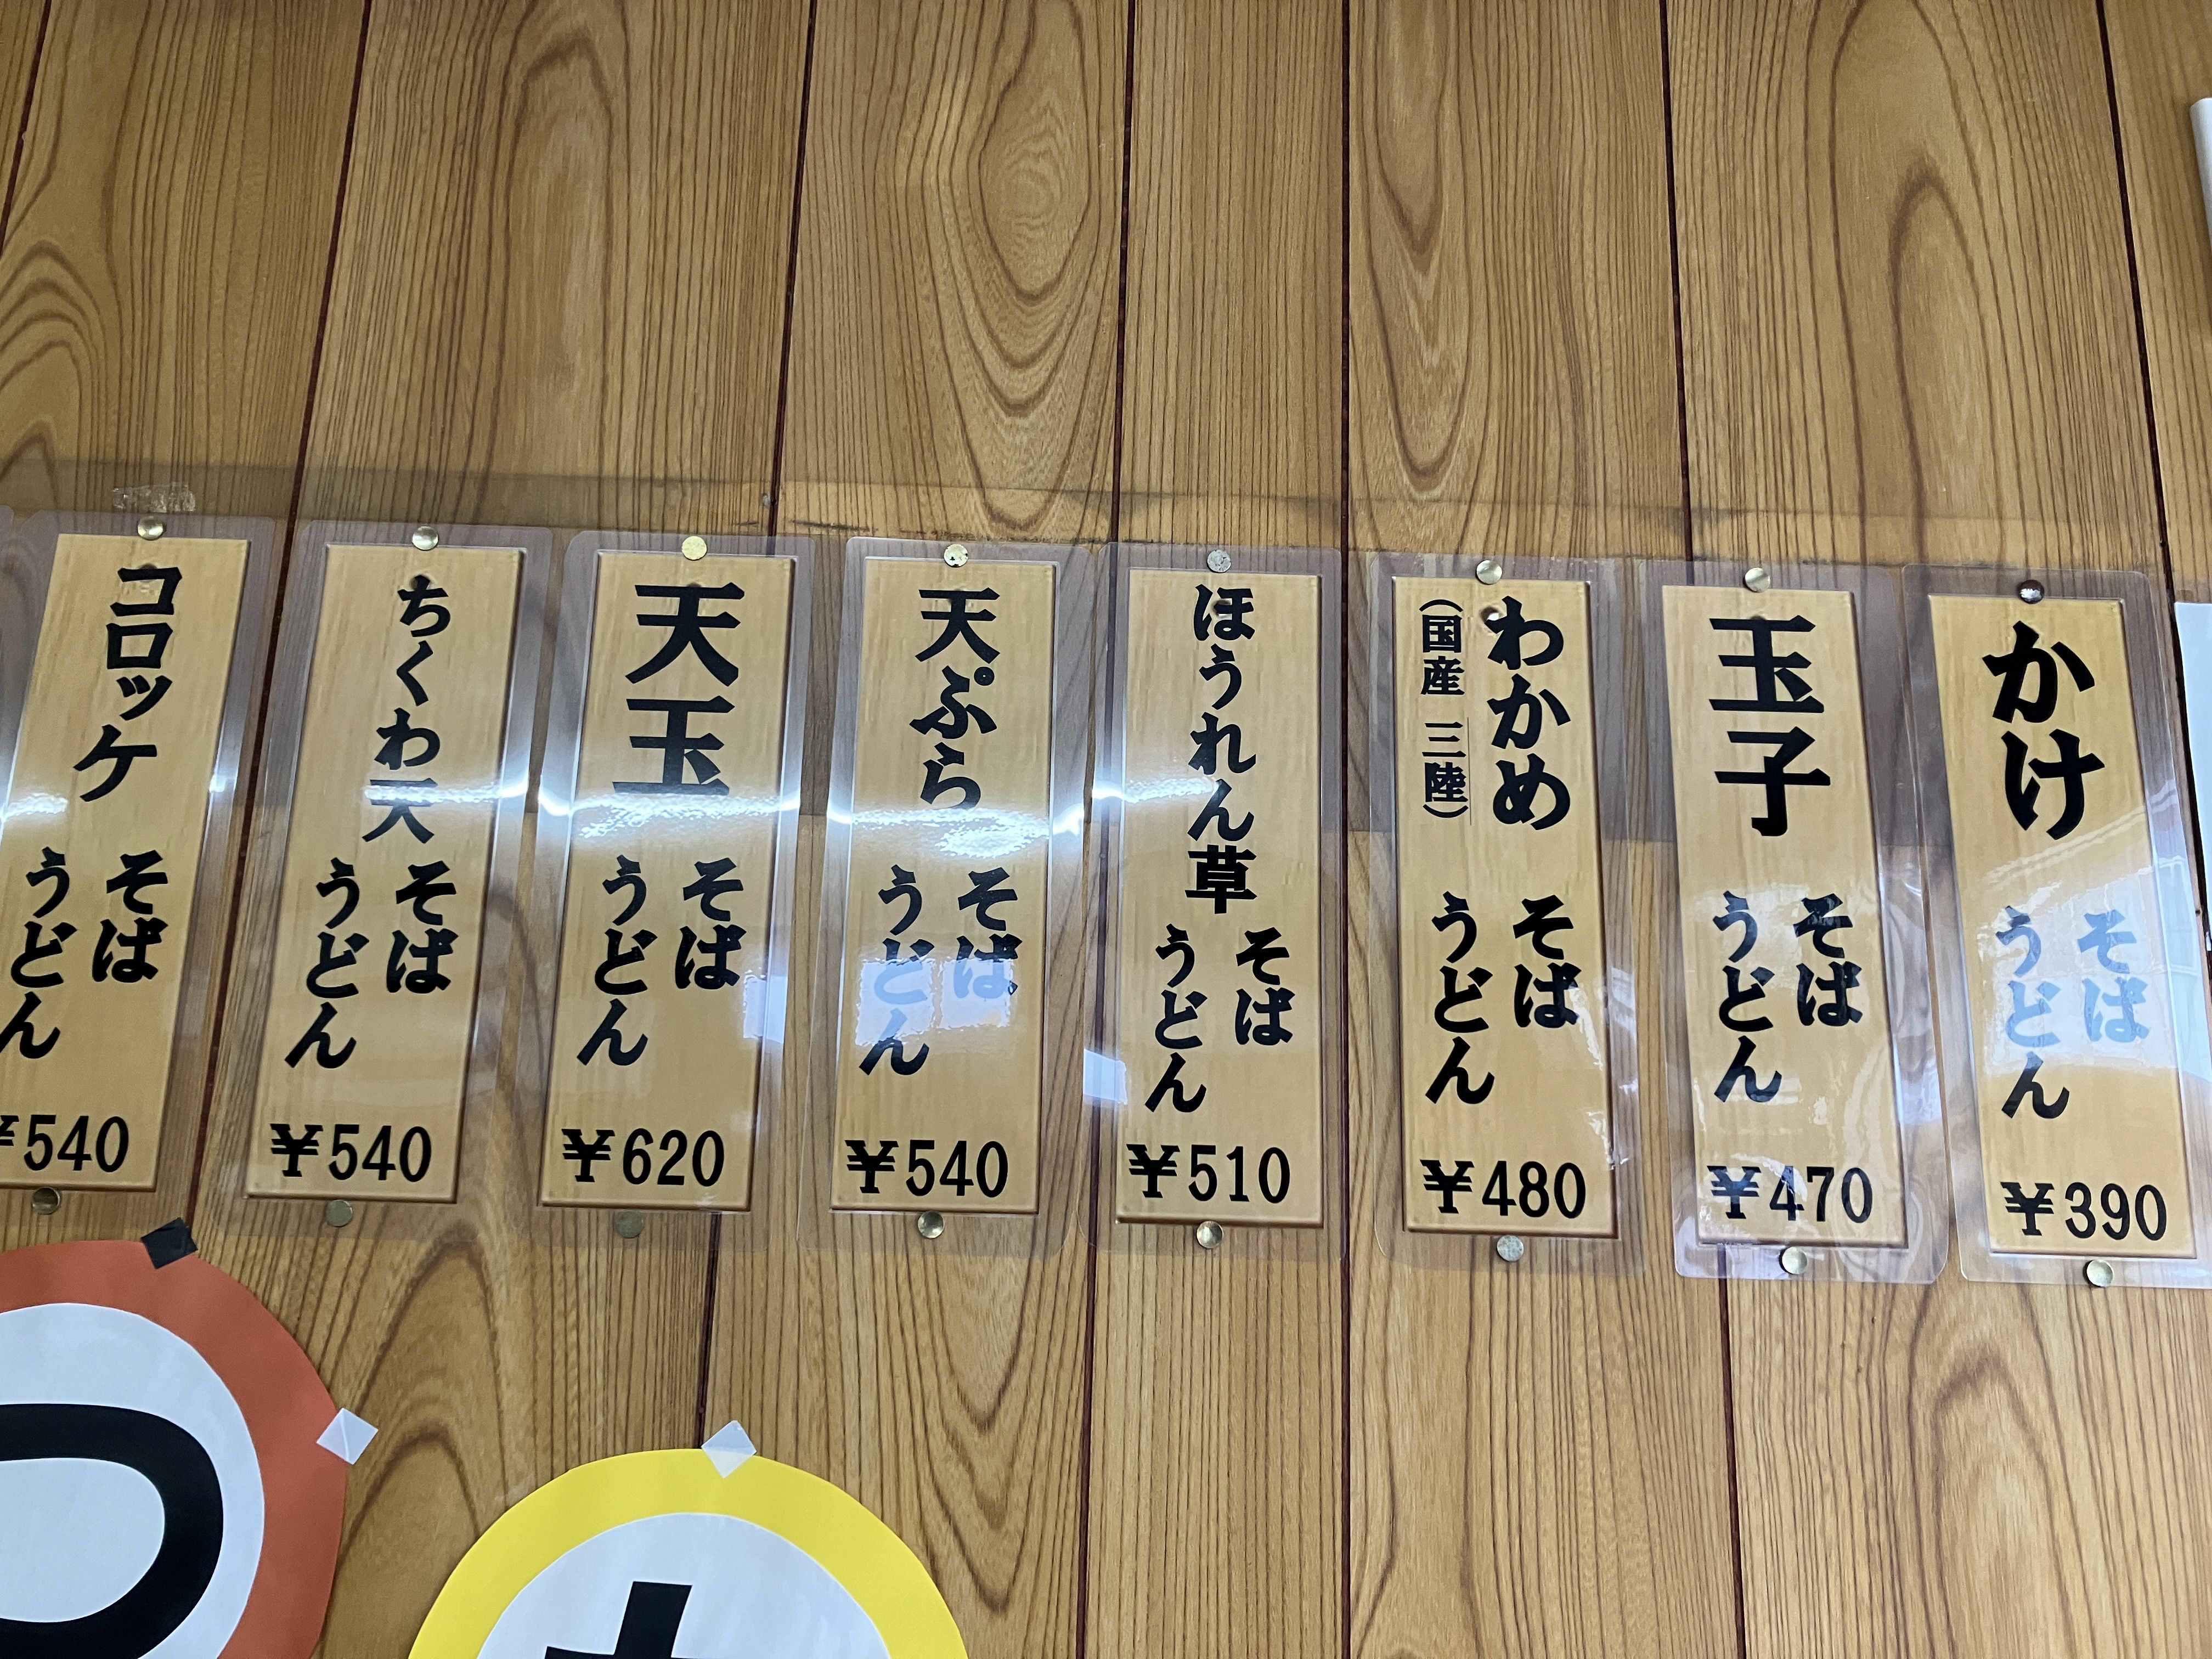 「天ぷら」「天玉」は王道の人気